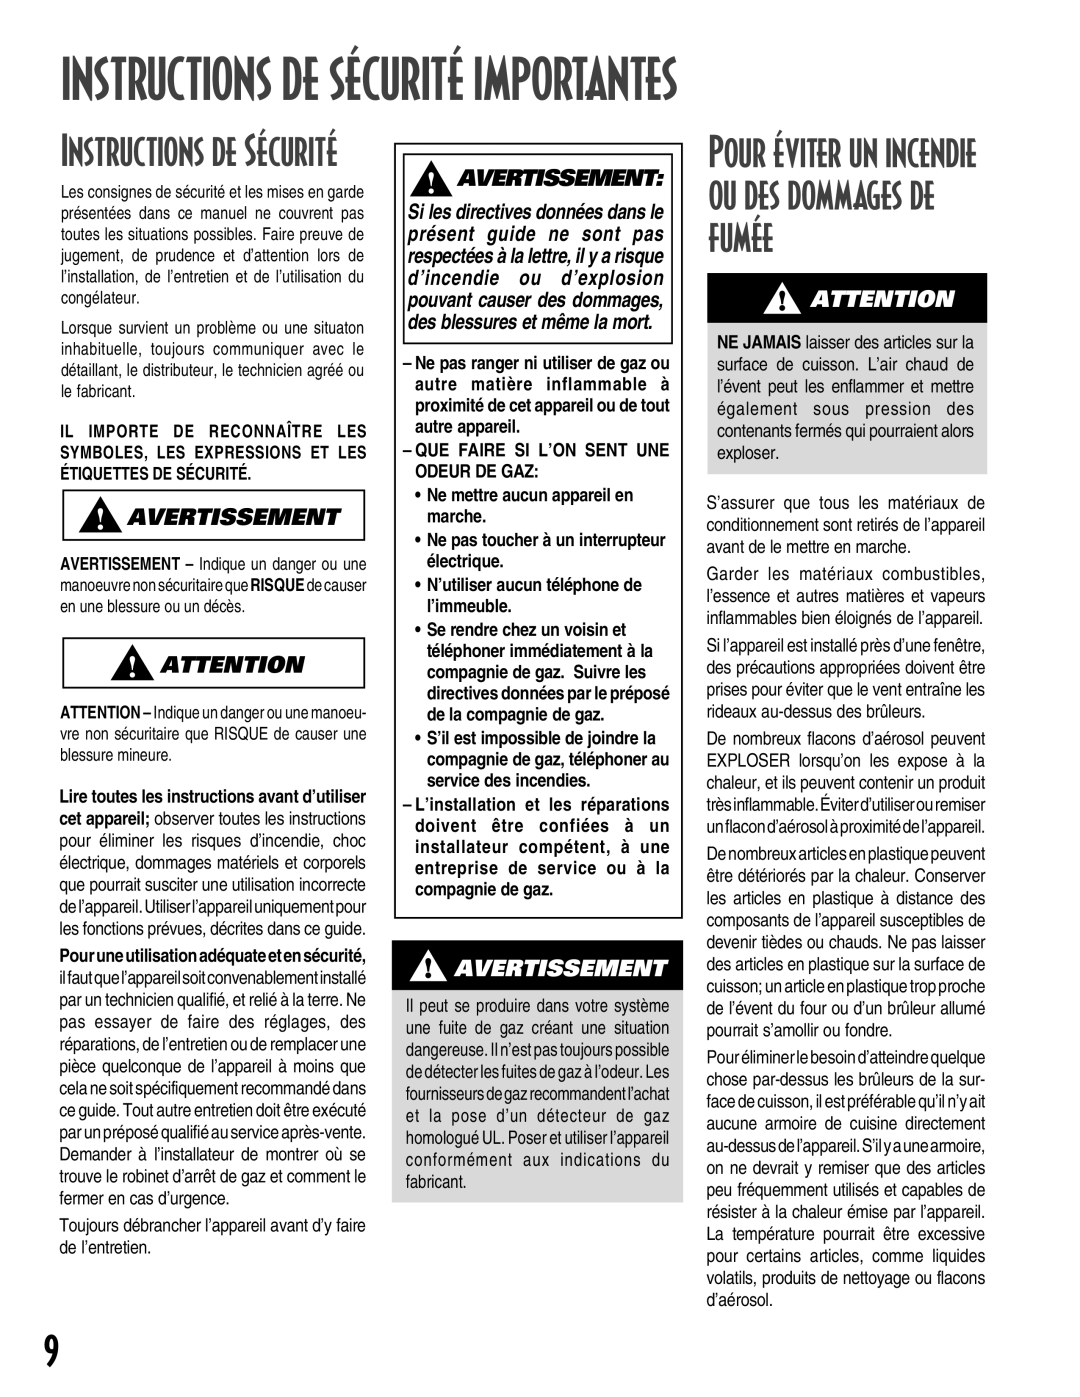 Maytag MGC5430 warranty Instructions De Sécurité Importantes, Instructions de Sécurité, Avertissement 